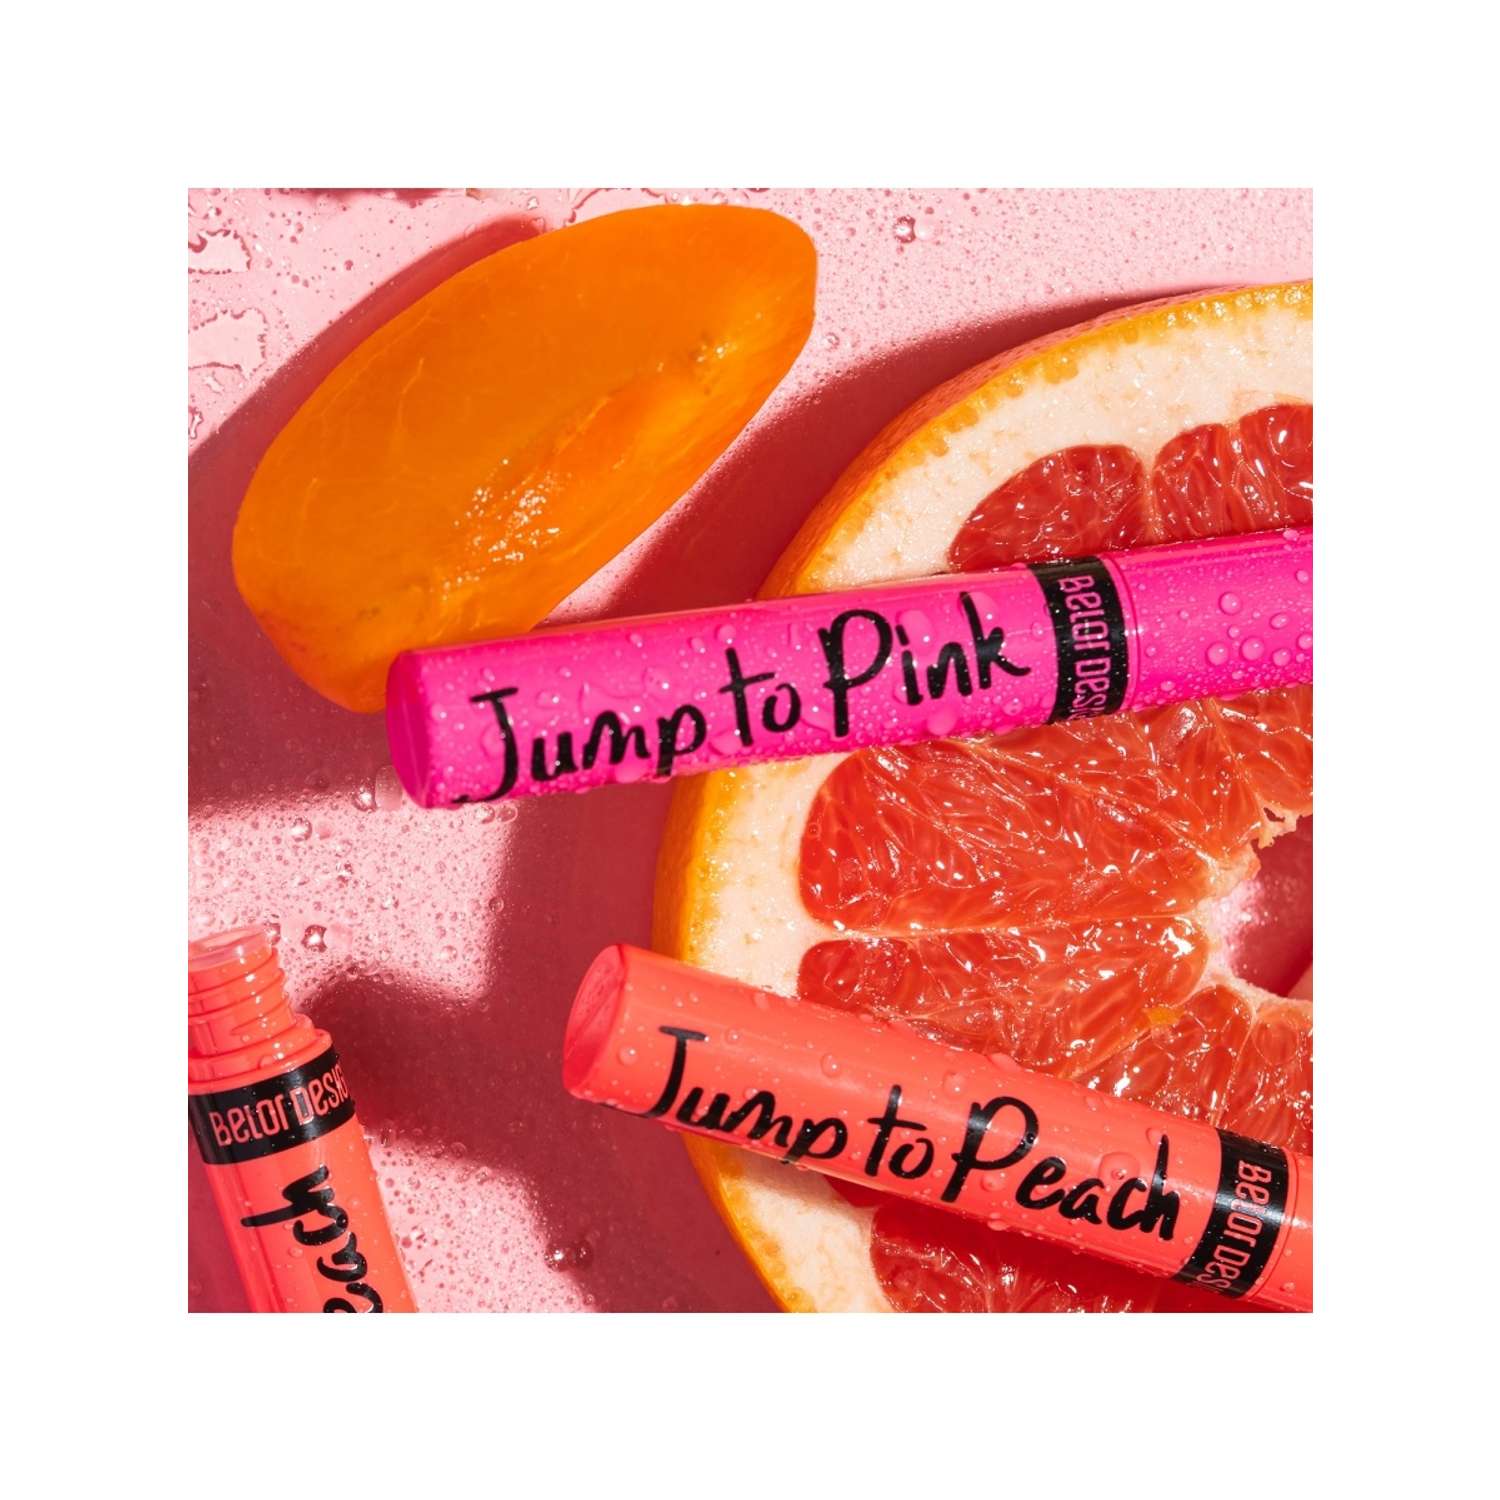 Блеск- тинт для губ Belor Design с оттенком увлажняющий Jump to Pink - фото 4